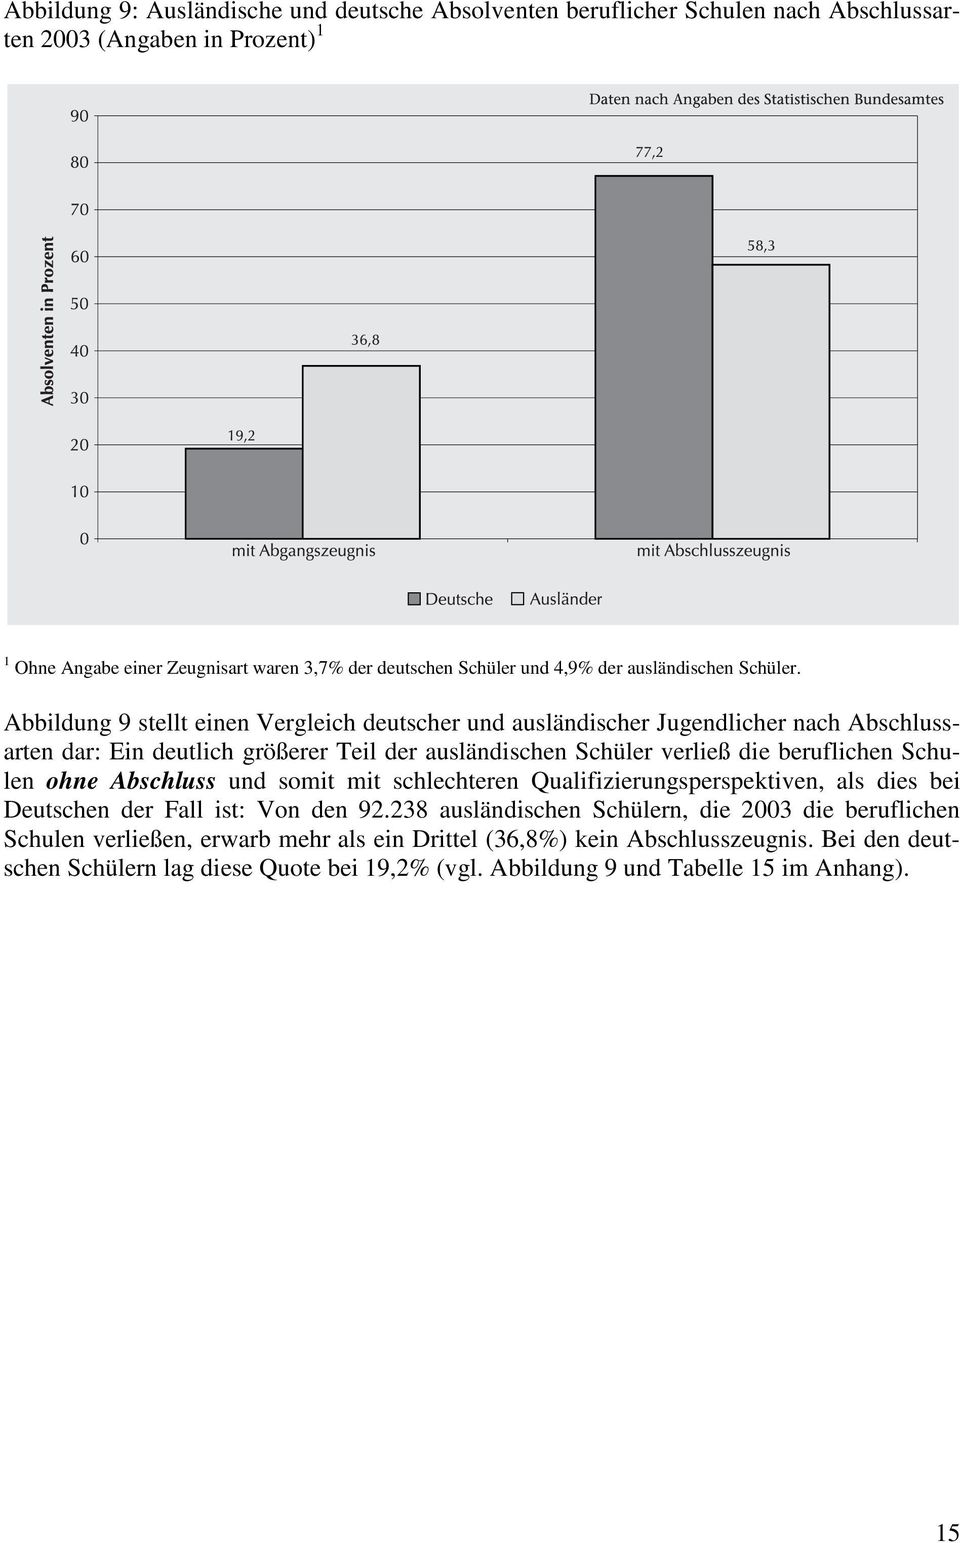 Abbildung 9 stellt einen Vergleich deutscher und ausländischer Jugendlicher nach Abschlussarten dar: Ein deutlich größerer Teil der ausländischen Schüler verließ die beruflichen Schulen